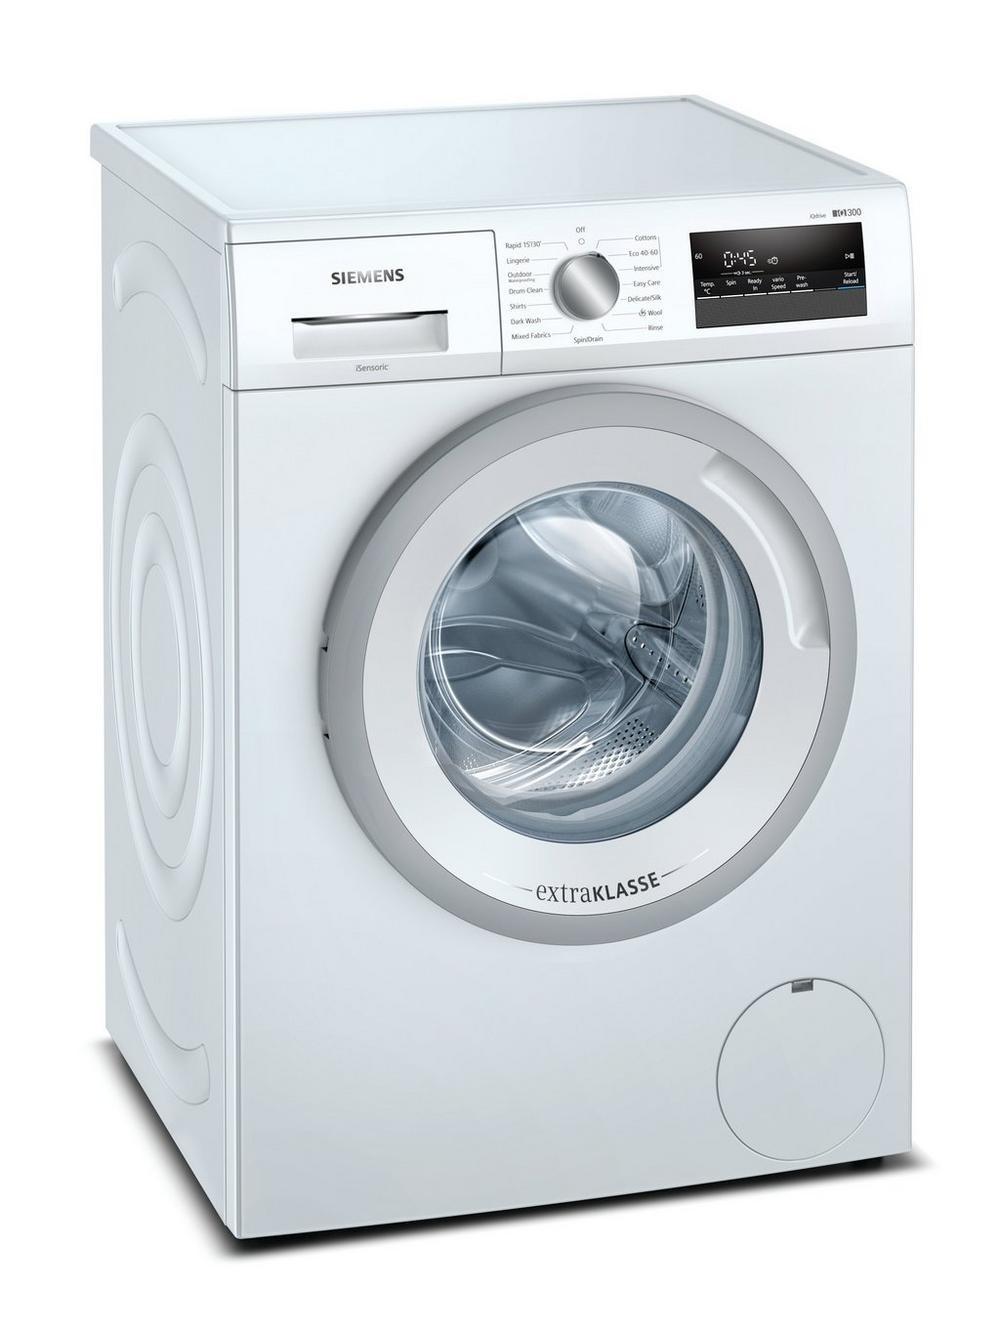 Siemens 7kg Washing Machine in White